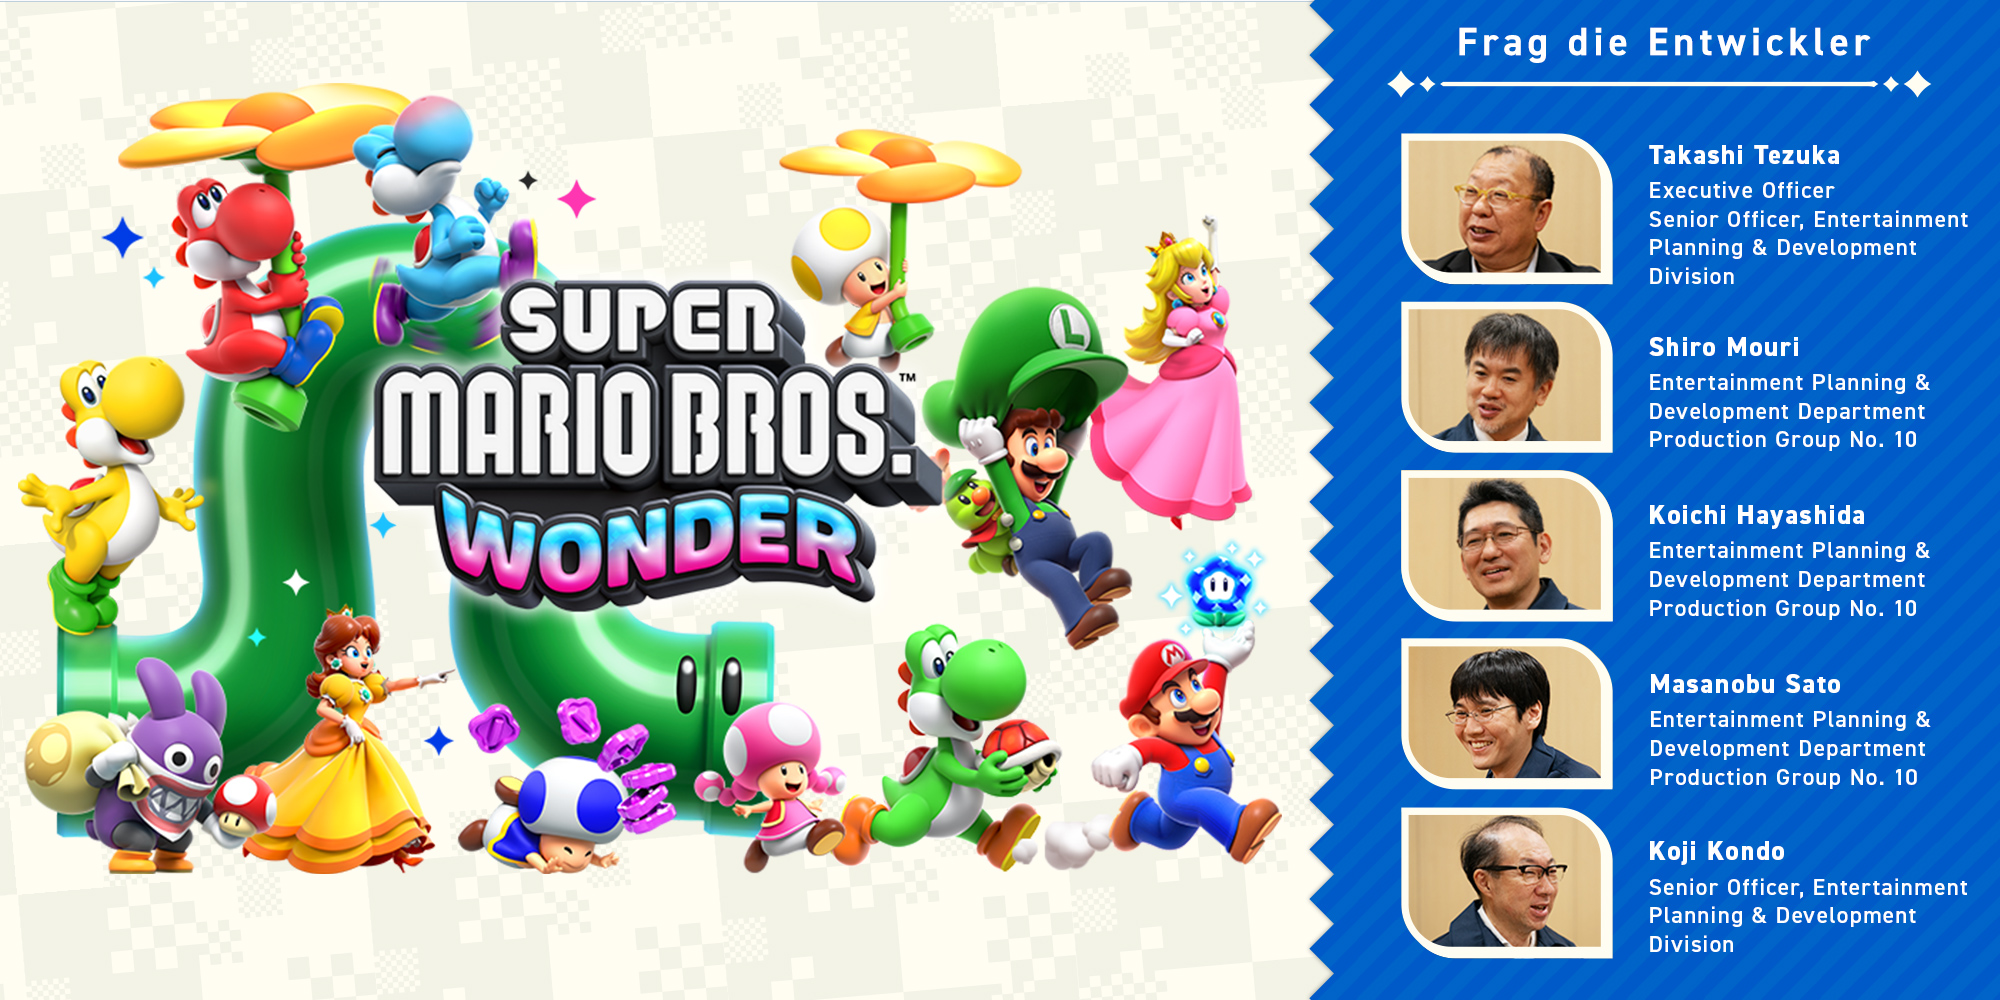 Frag die Entwickler Teil 11: Super Mario Bros. Wonder – Kapitel 2